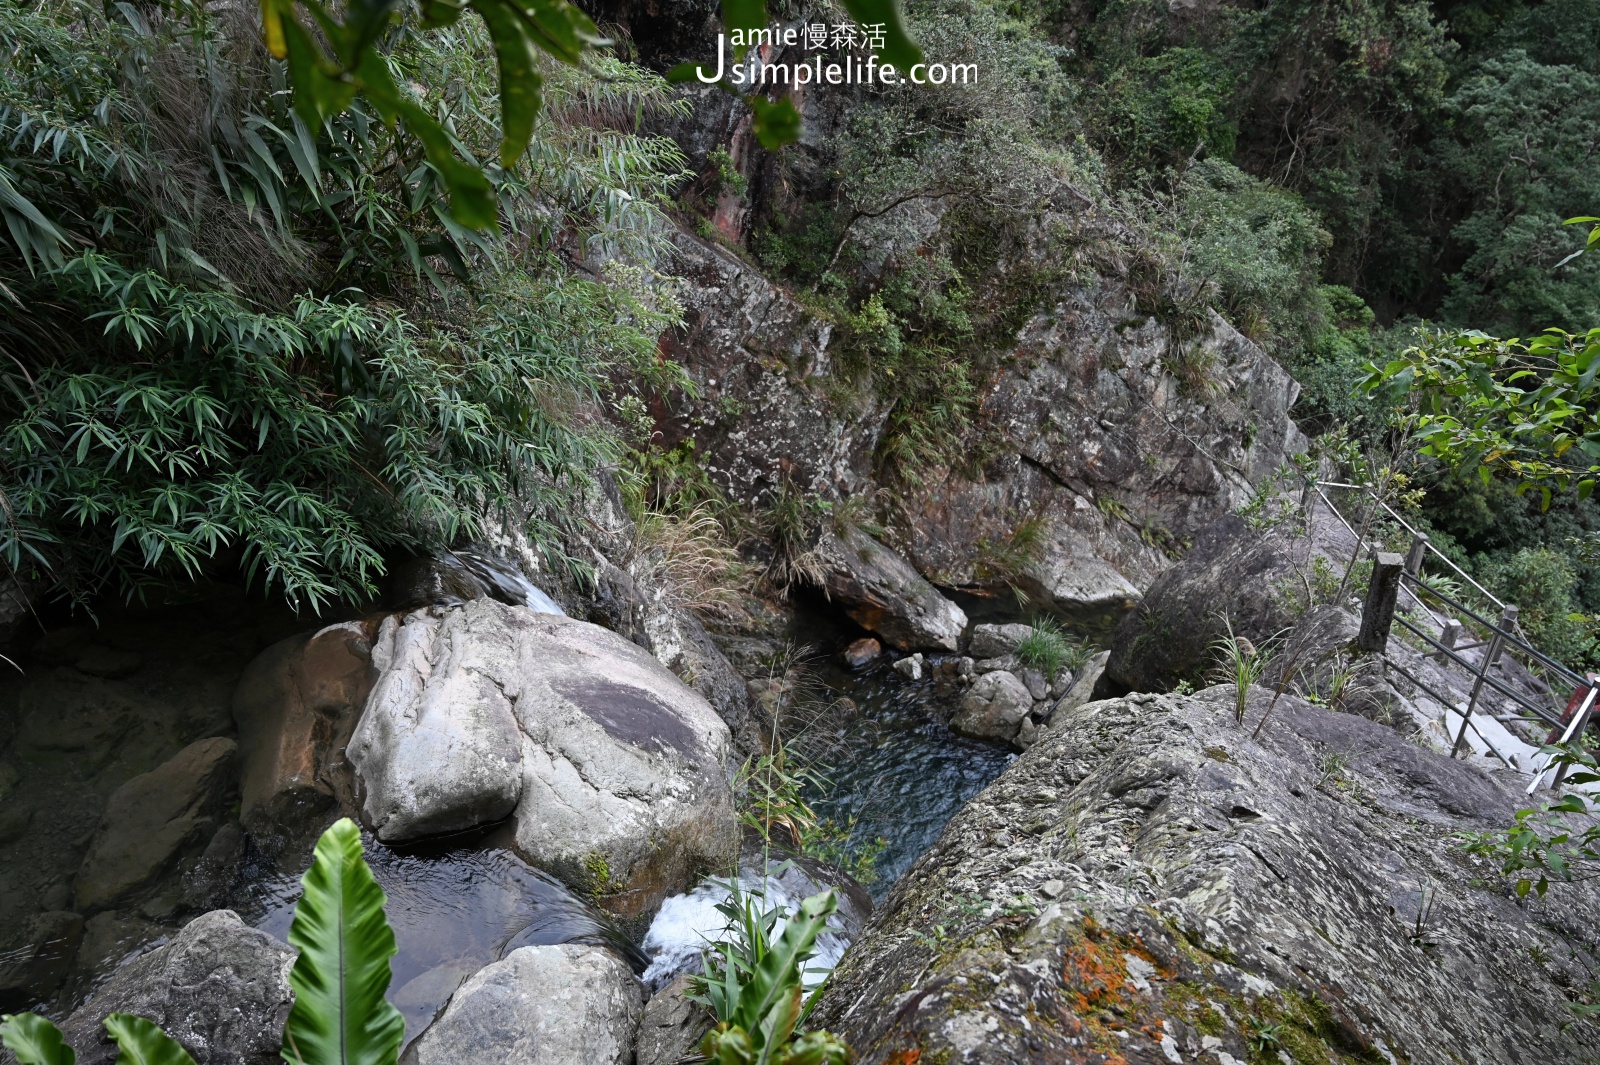 輕鬆欣賞宜蘭礁溪「猴洞坑瀑布」美麗之景